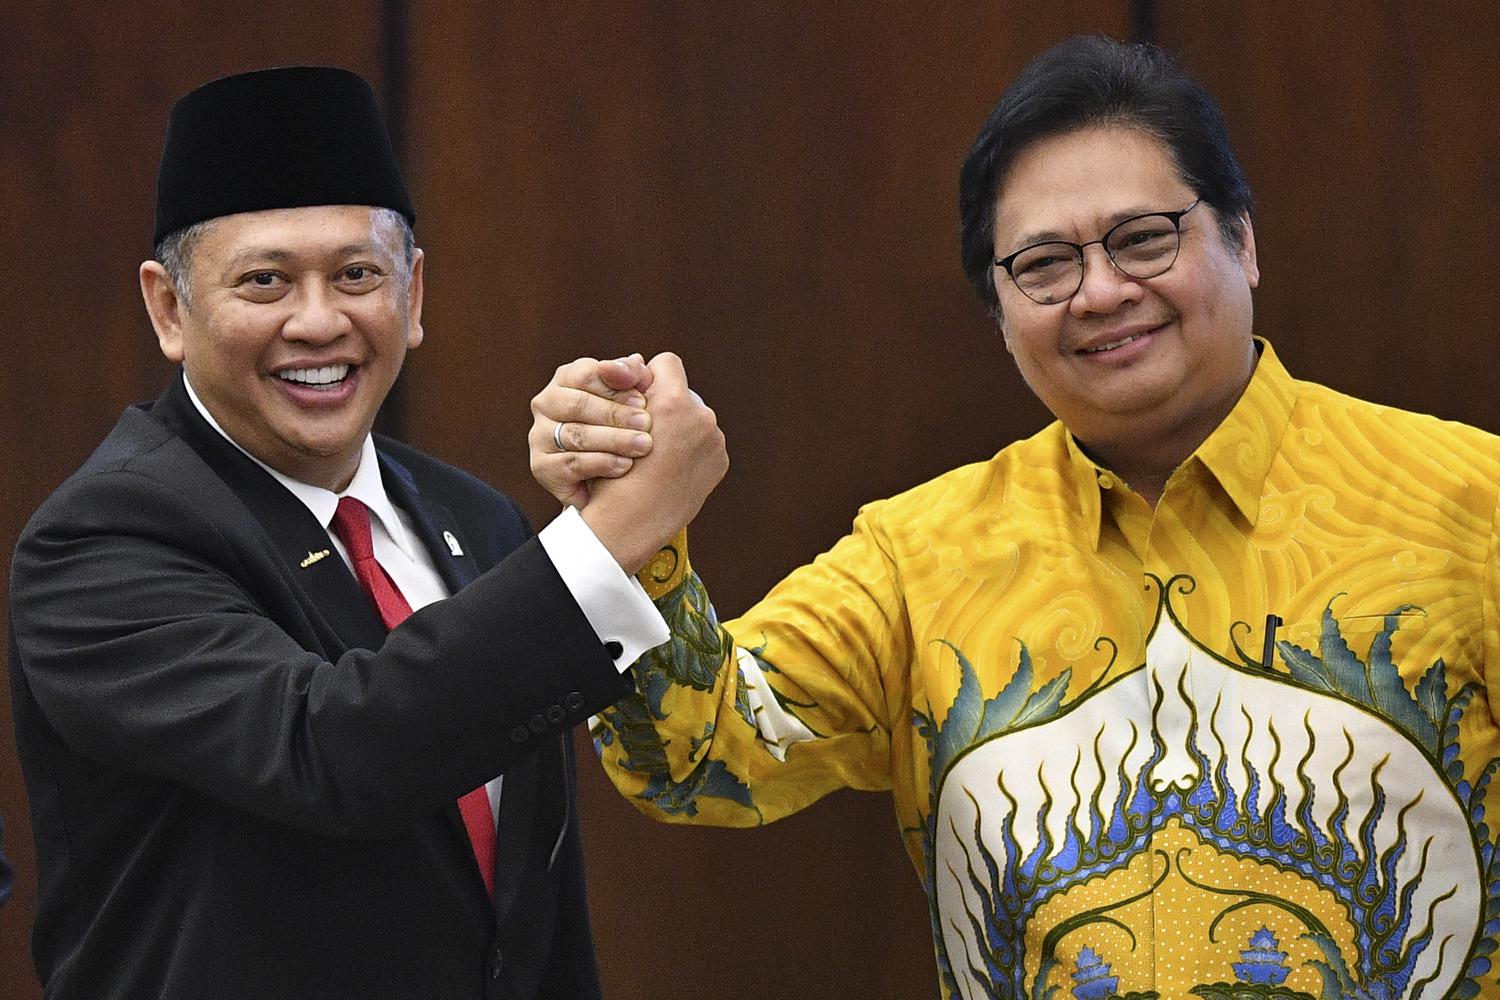 Ketua MPR Bambang Soesatyo (kiri) berjabat tangan dengan Ketua Umum Partai Golkar Airlangga Hartarto (kanan). Bamsoet tengah diisukan sebagai kandidat Ketua Umum Partai Golkar periode 2019-2024 di Munas pada Desember 2019.